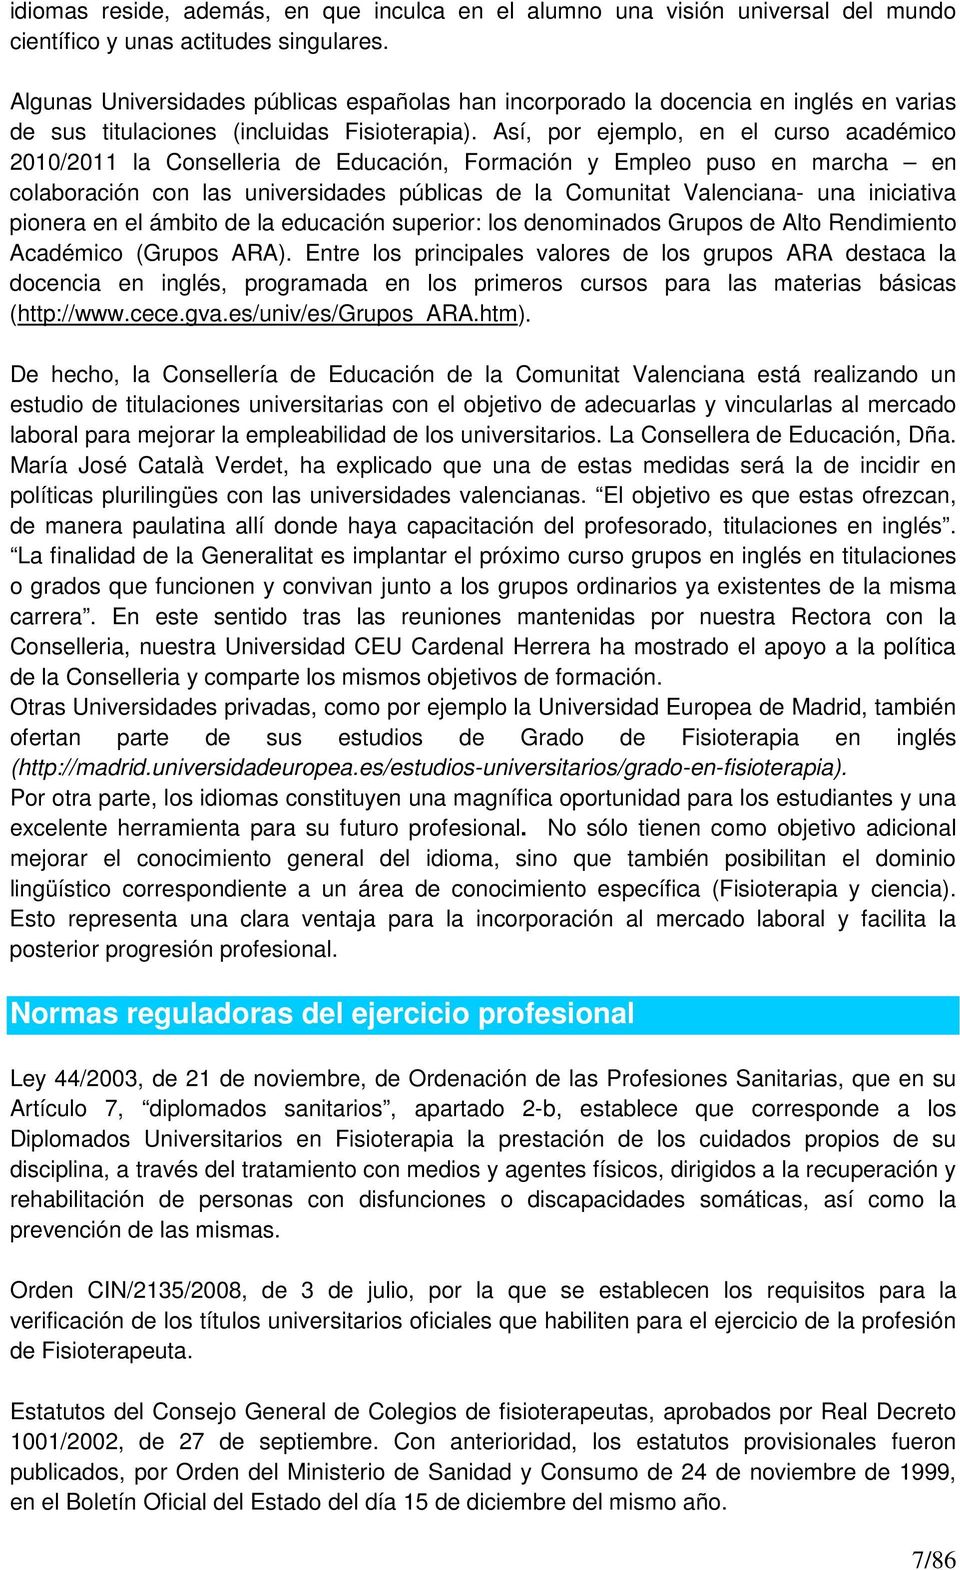 Así, por ejemplo, en el curso académico 2010/2011 la Conselleria de Educación, Formación y Empleo puso en marcha en colaboración con las universidades públicas de la Comunitat Valenciana- una